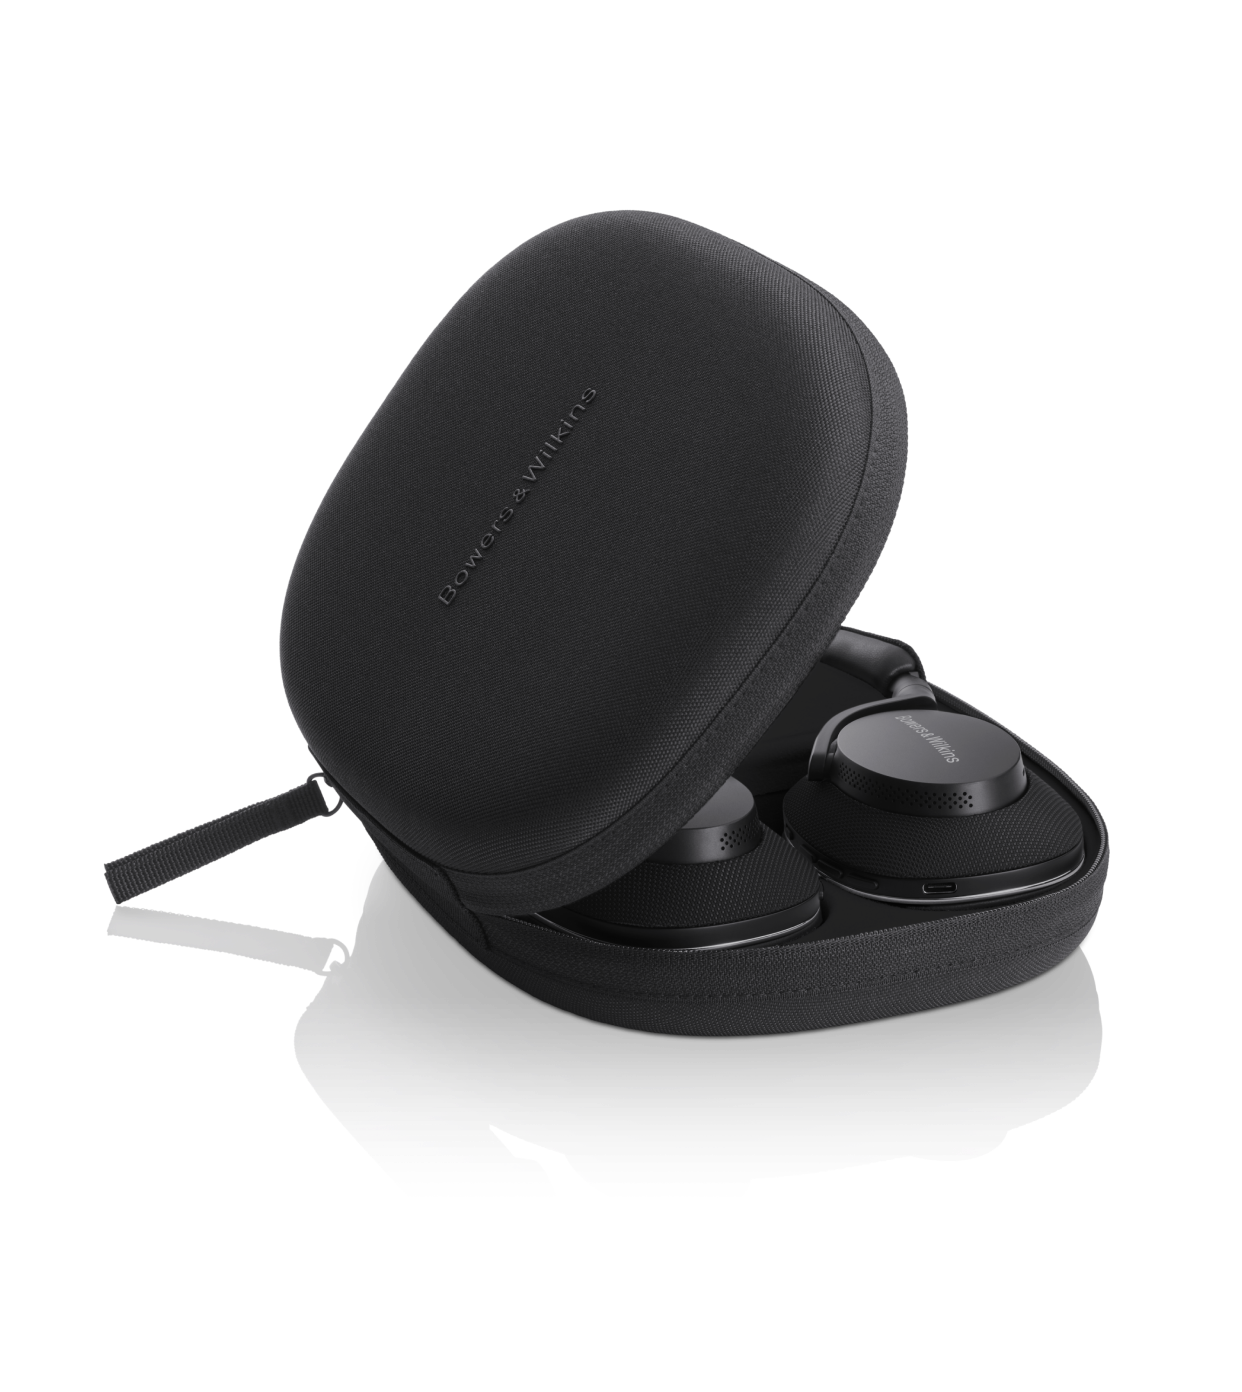 אוזניות Bluetooth אלחוטיות דגם Px7 S2e מבית Bowers & Wilkins צבע שחור